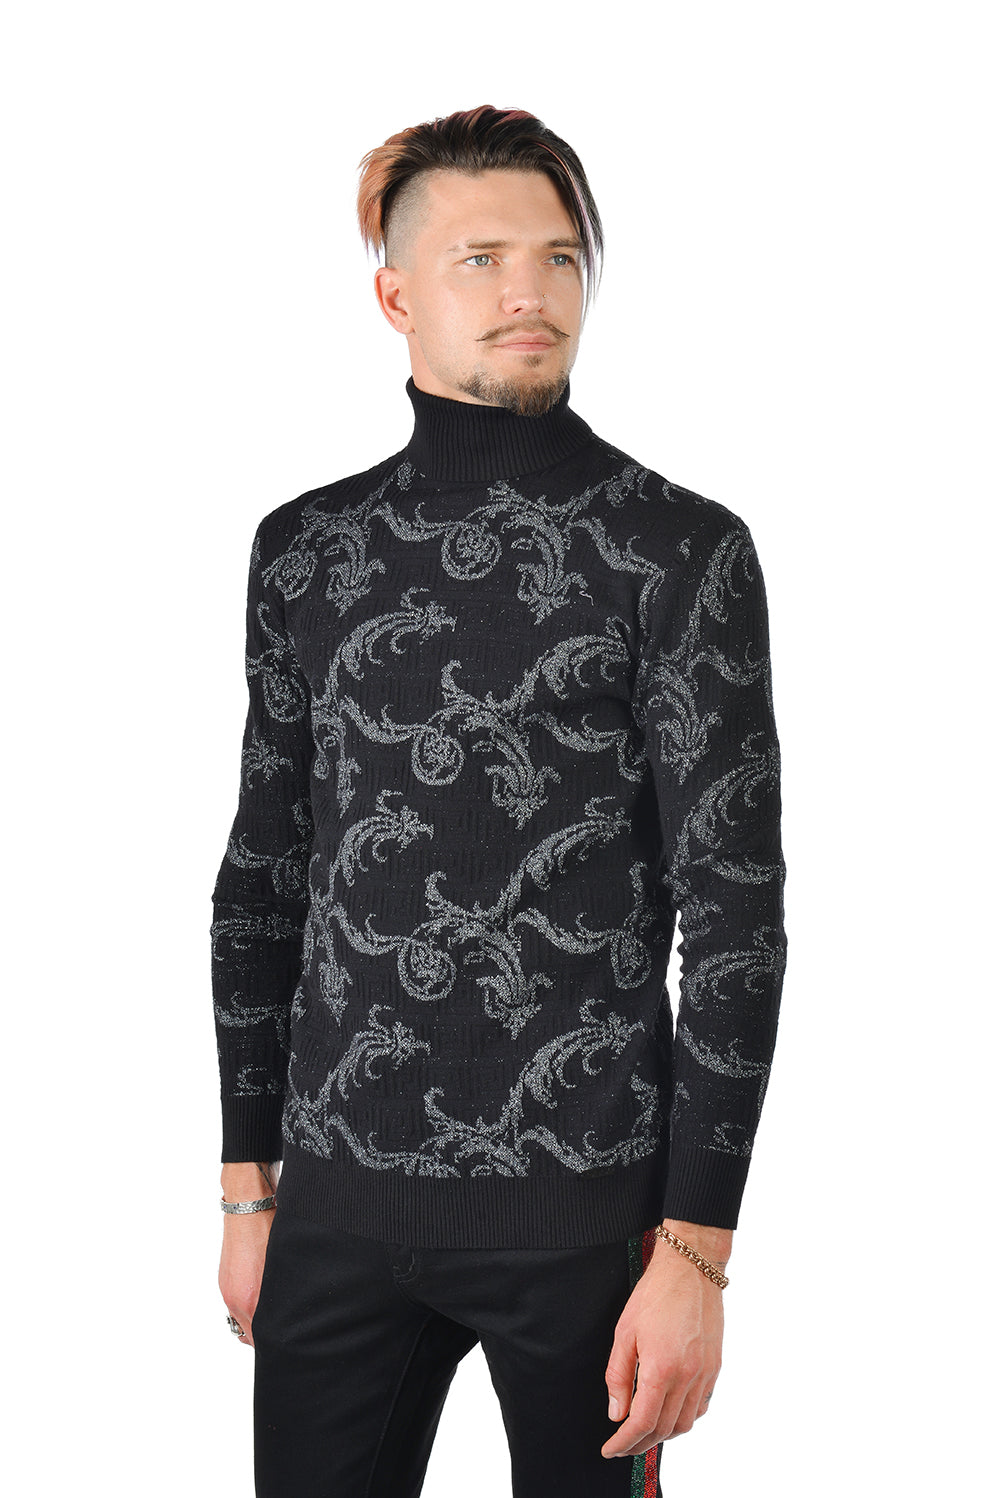 Barabas Men's Floral Design Long Sleeve Turtleneck Sweater 2LS2102 Black Silver